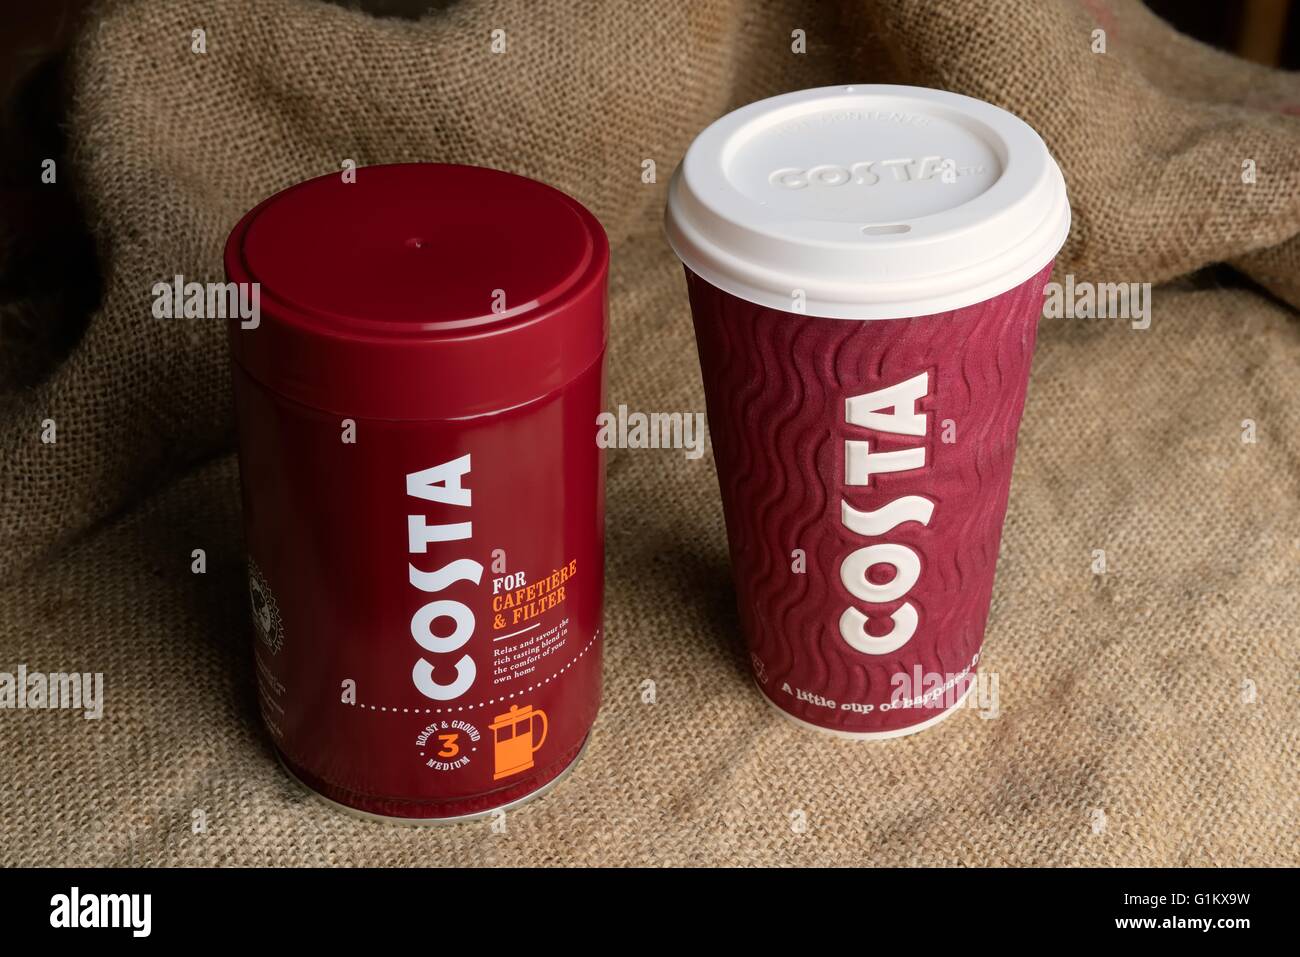 Eine Dose gerösteter und gemahlener Kaffee von Costa und eine Tasse Kaffee zum mitnehmen auf eine hessische Hintergrund. Stockfoto